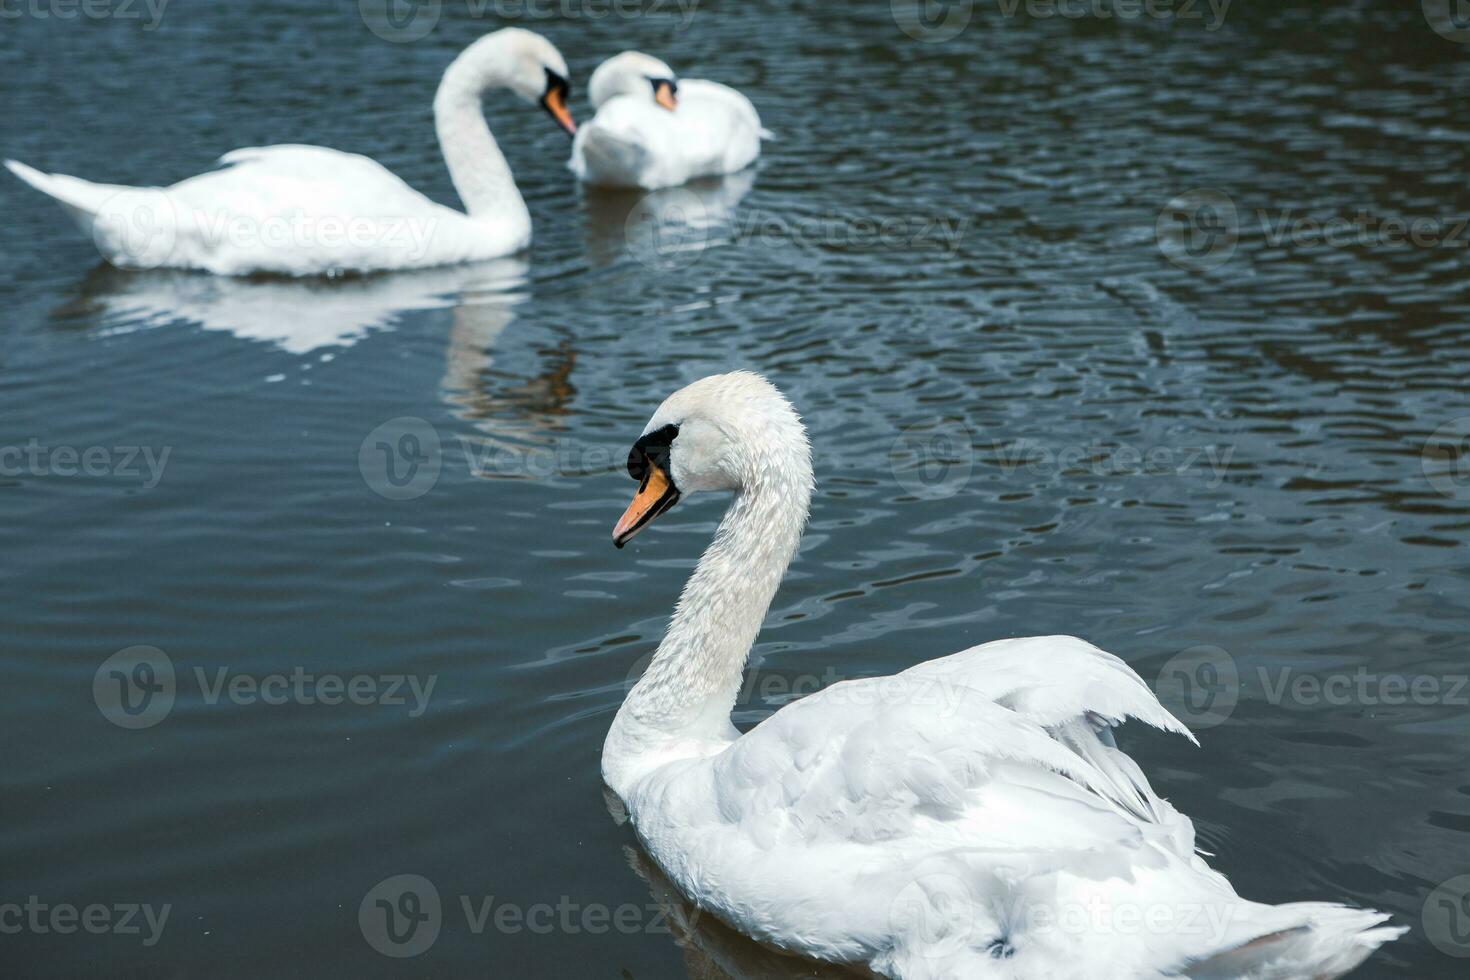 mooi wit zwanen zwemmen Aan een meer in de park. foto